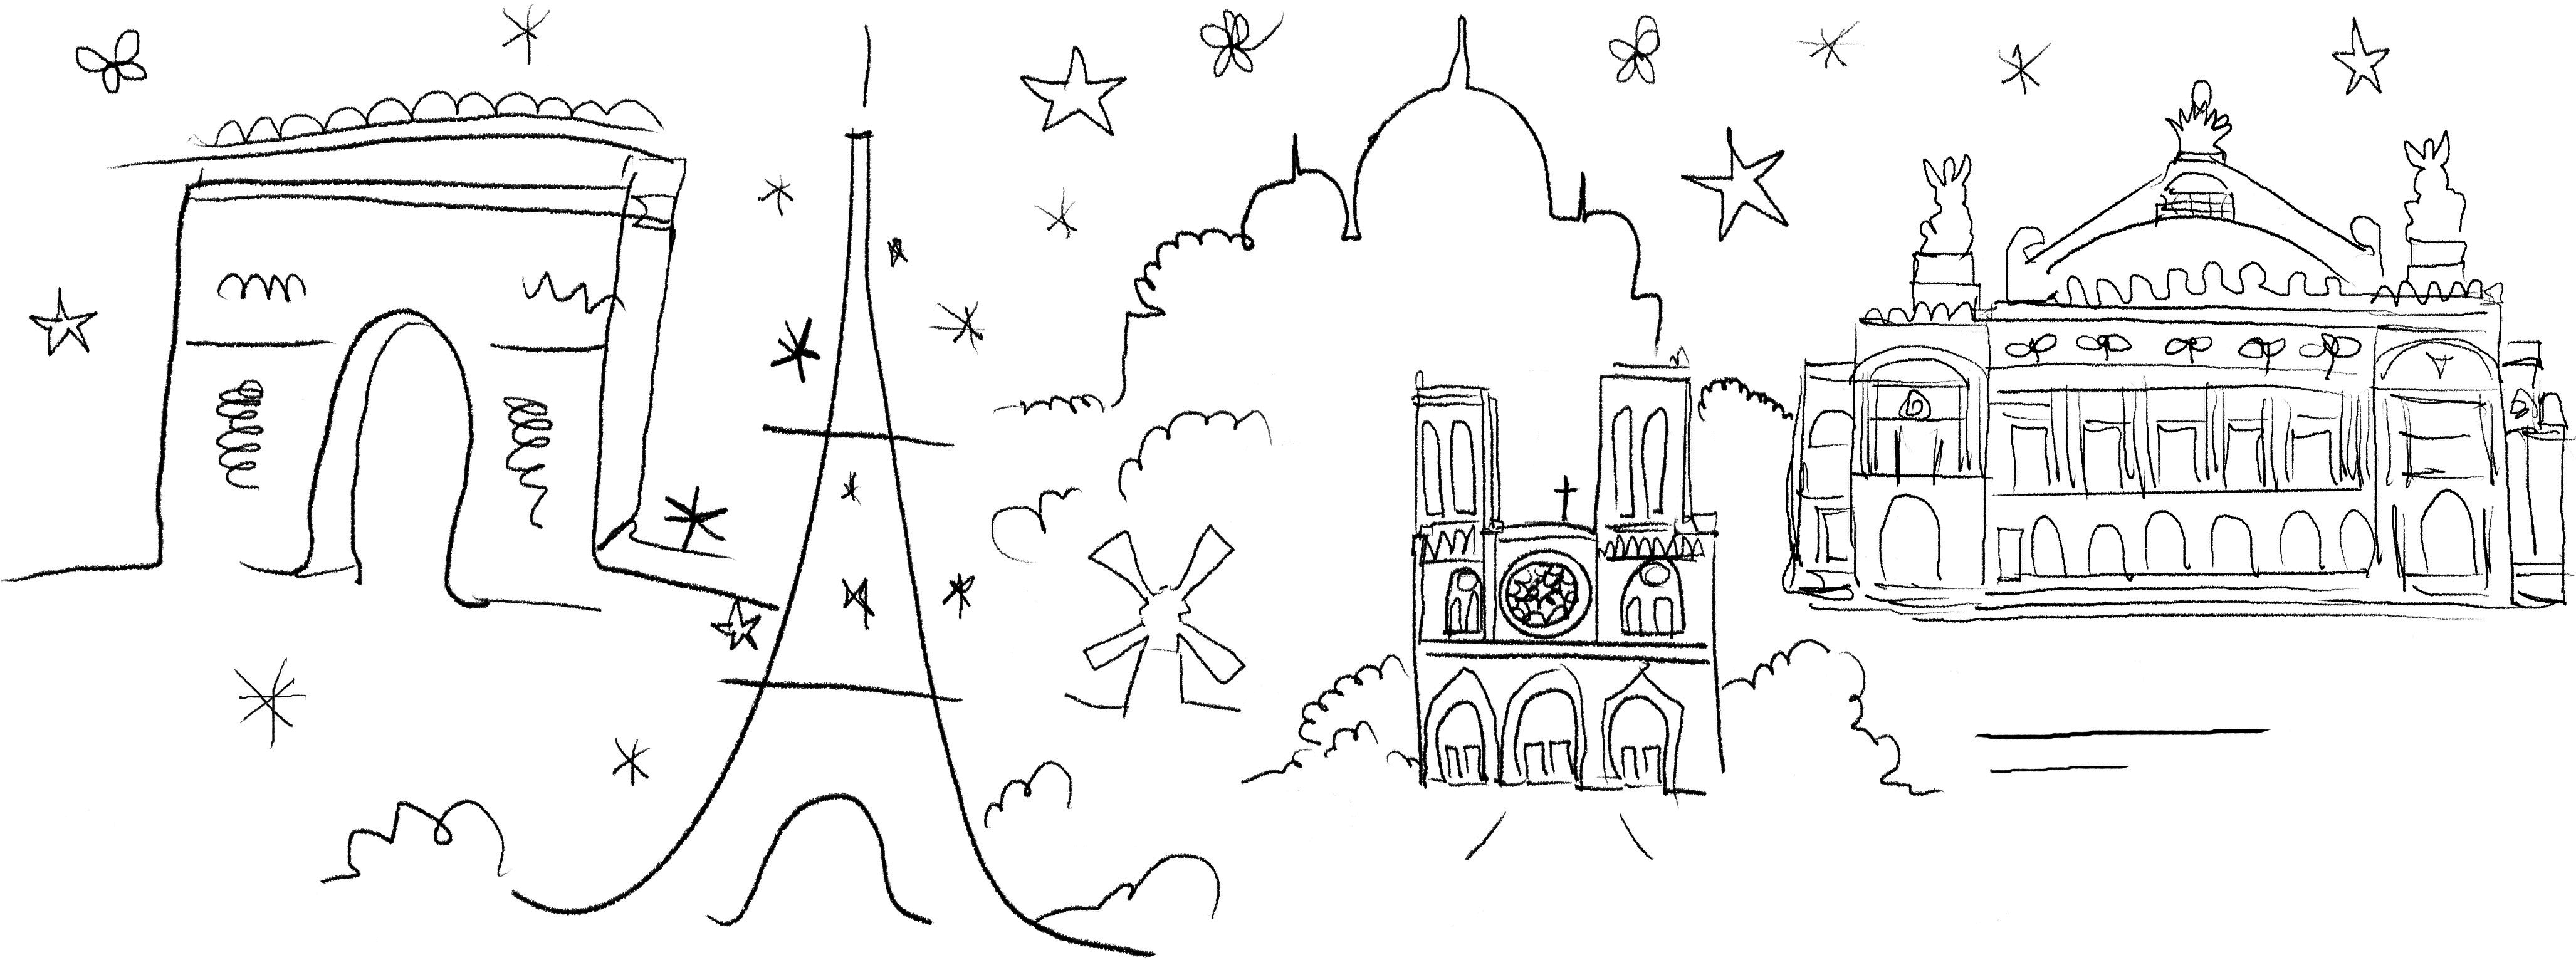 Illustration of Paris